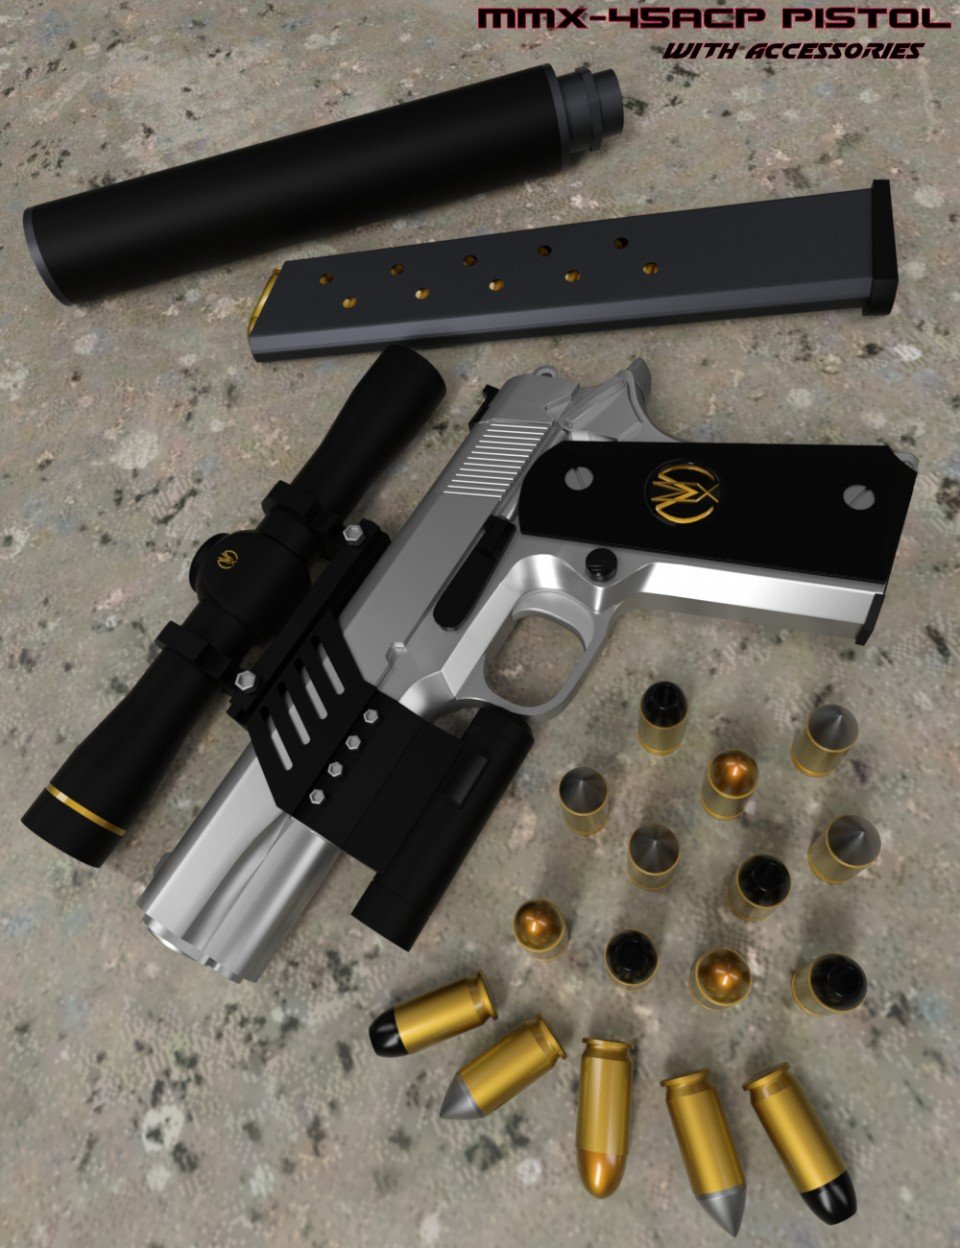 MMX-45ACP Pistol with Accessories_DAZ3DDL